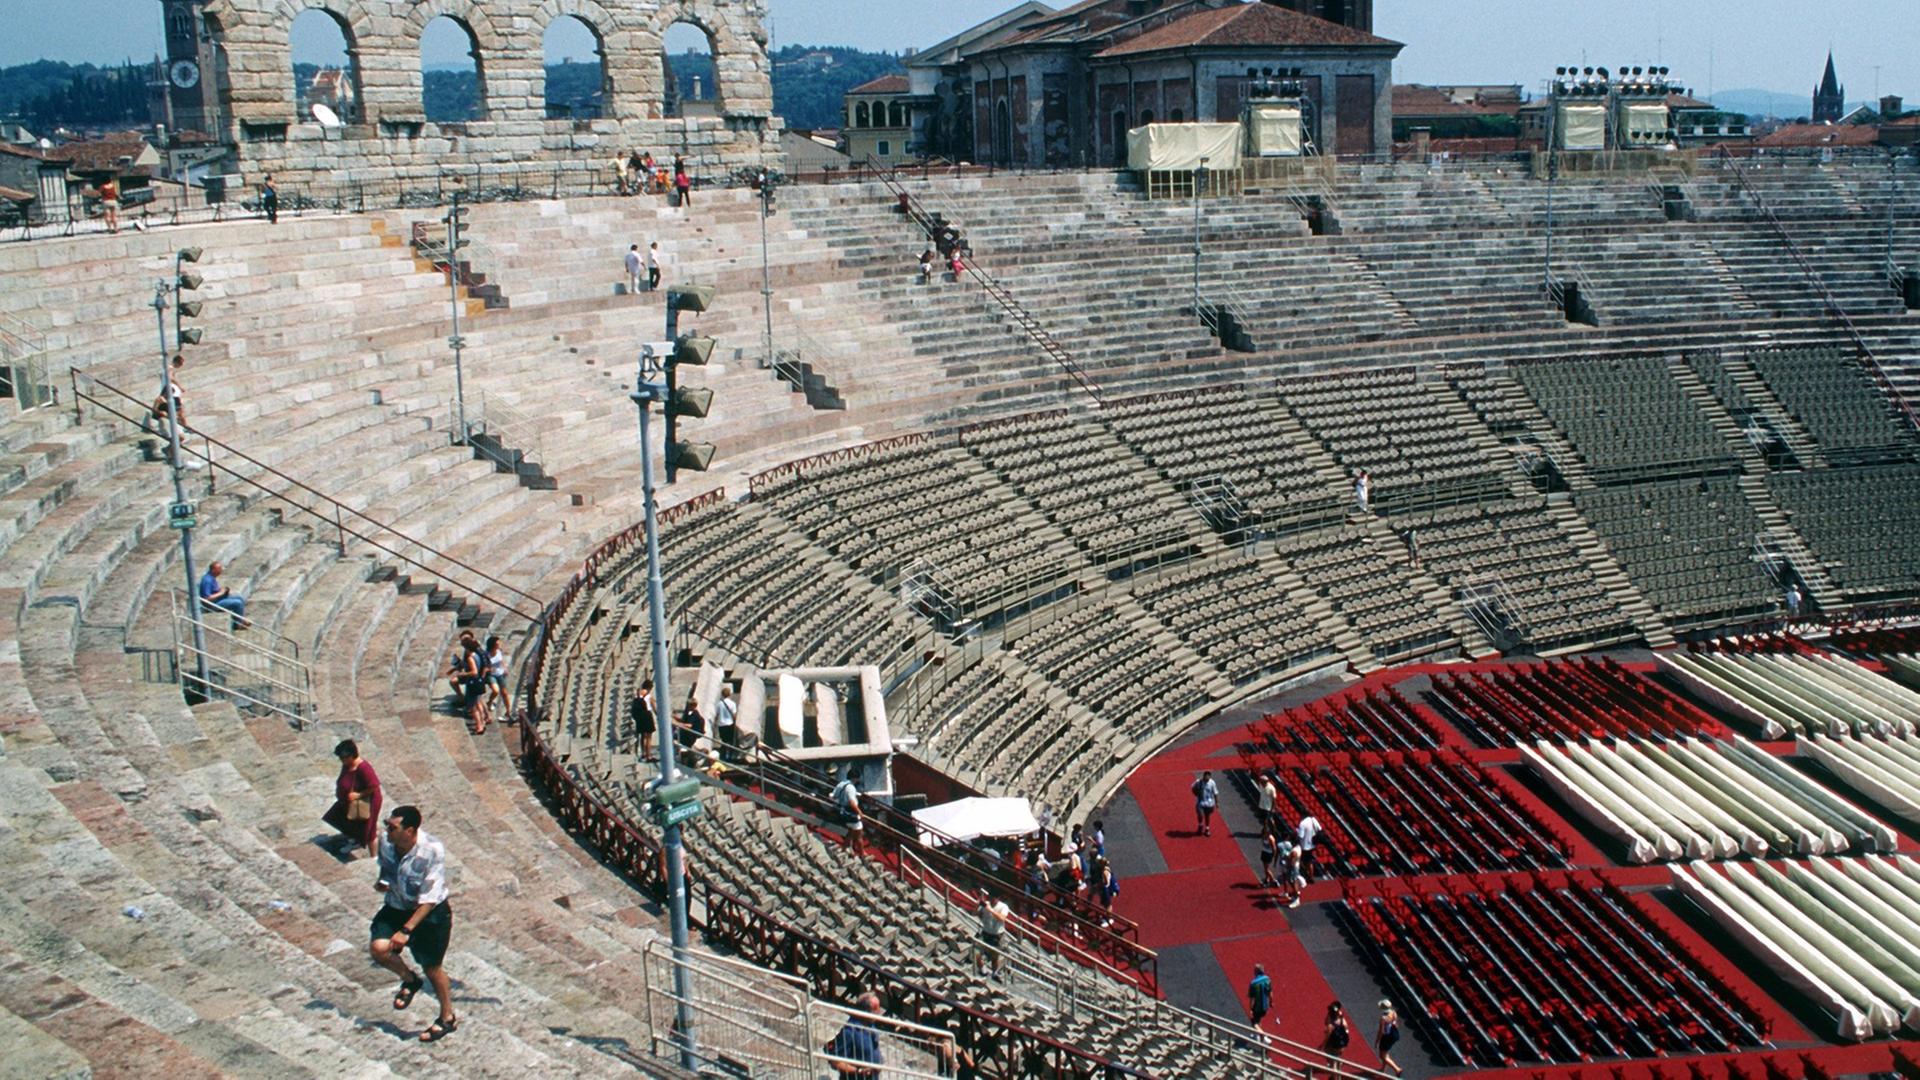 Blick über den Zuschauerraum der römischen Arena in Verona, in der jährlich unter freiem Himmel die Opernfestspiele stattfinden.